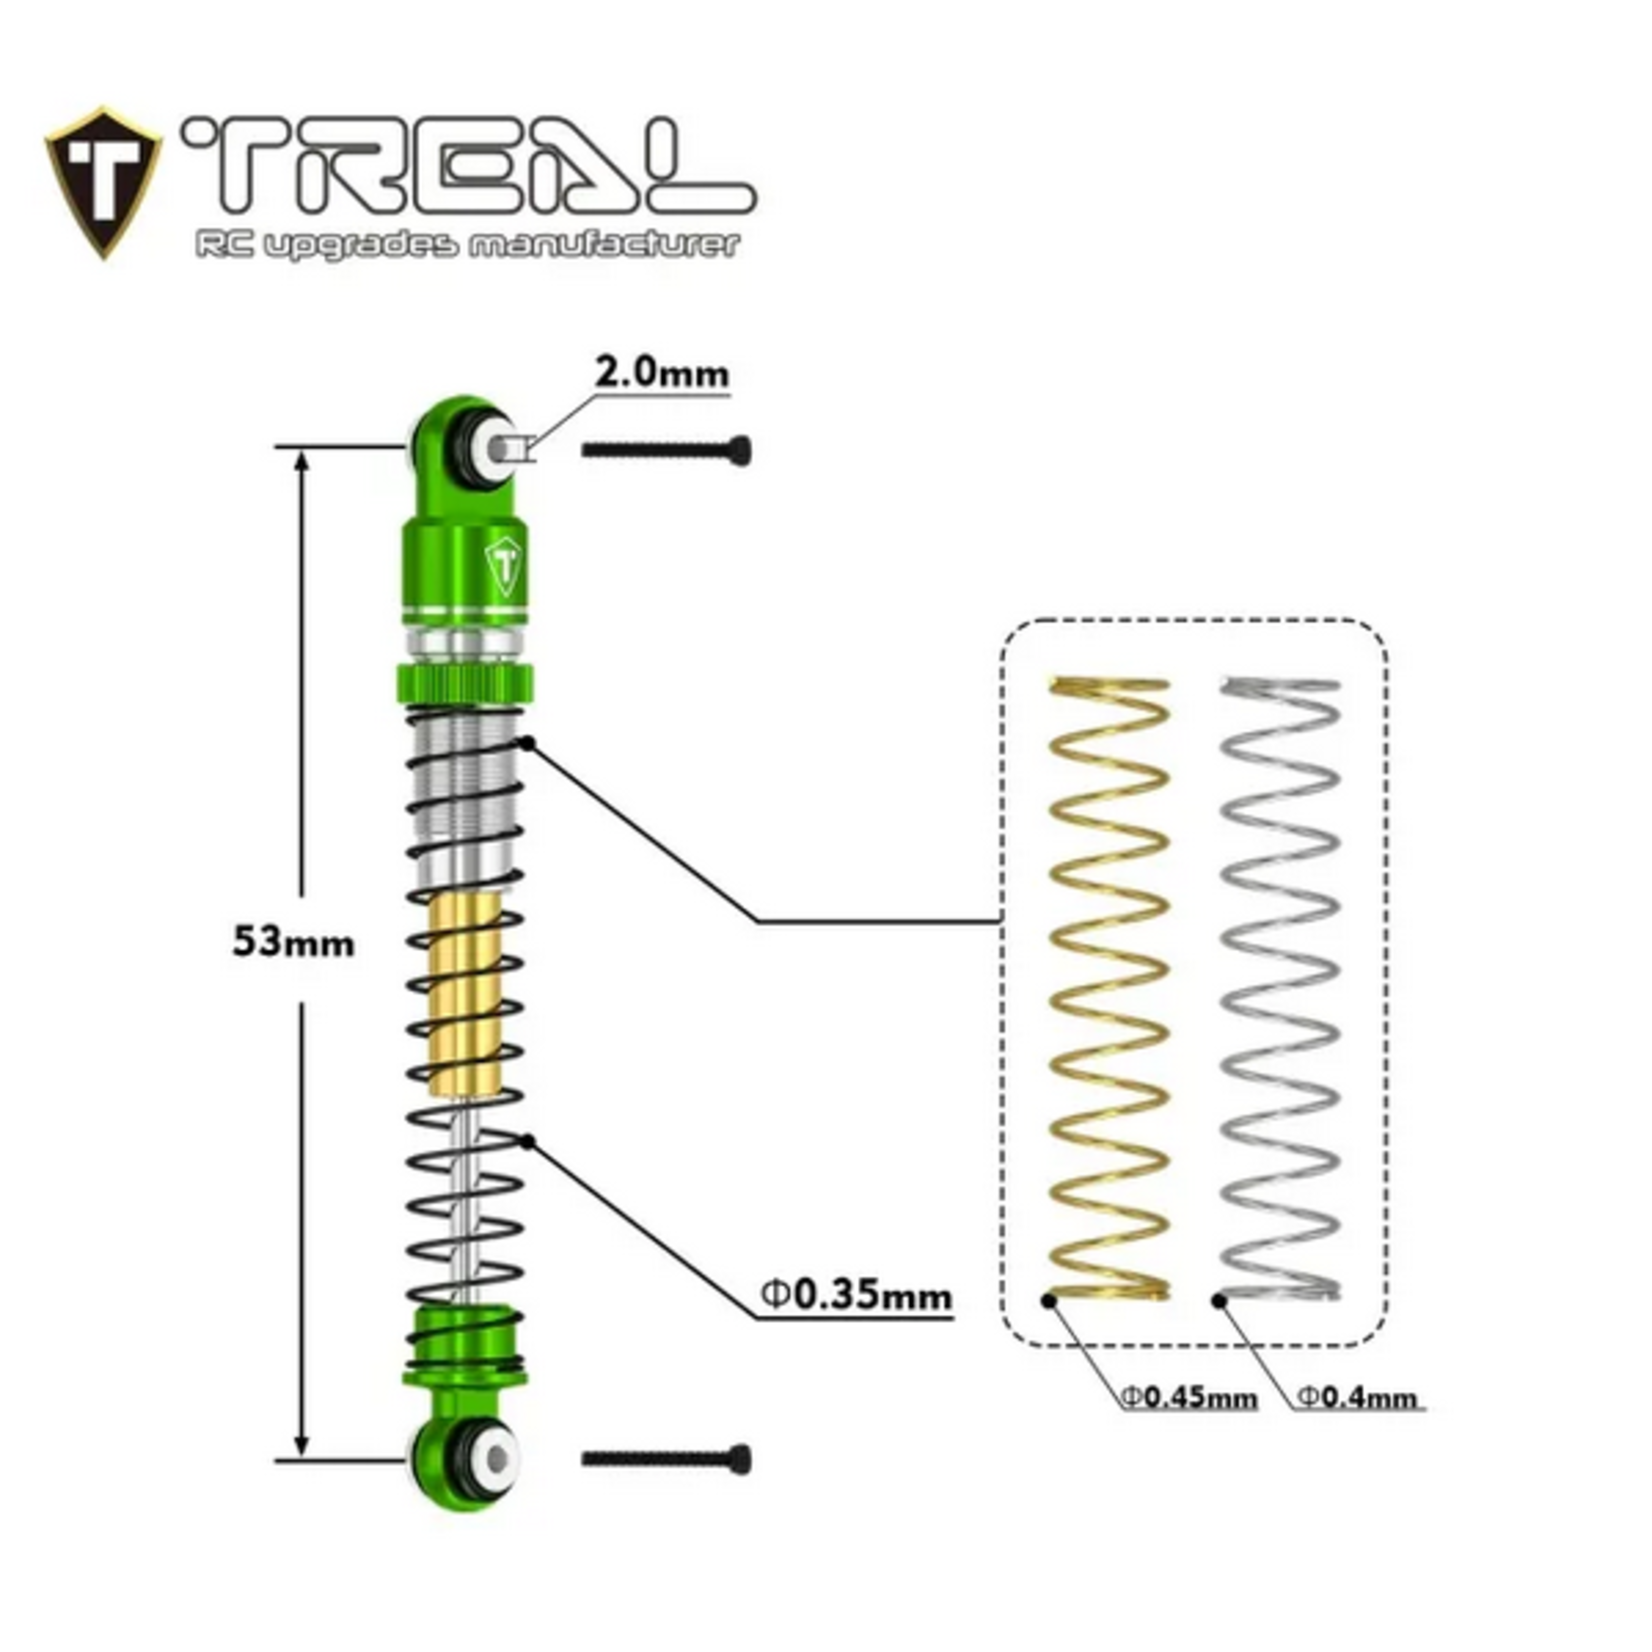 Treal TREAL AX24 Aluminum Threaded Shocks (53mm) (Green) #X003SX4LMZ